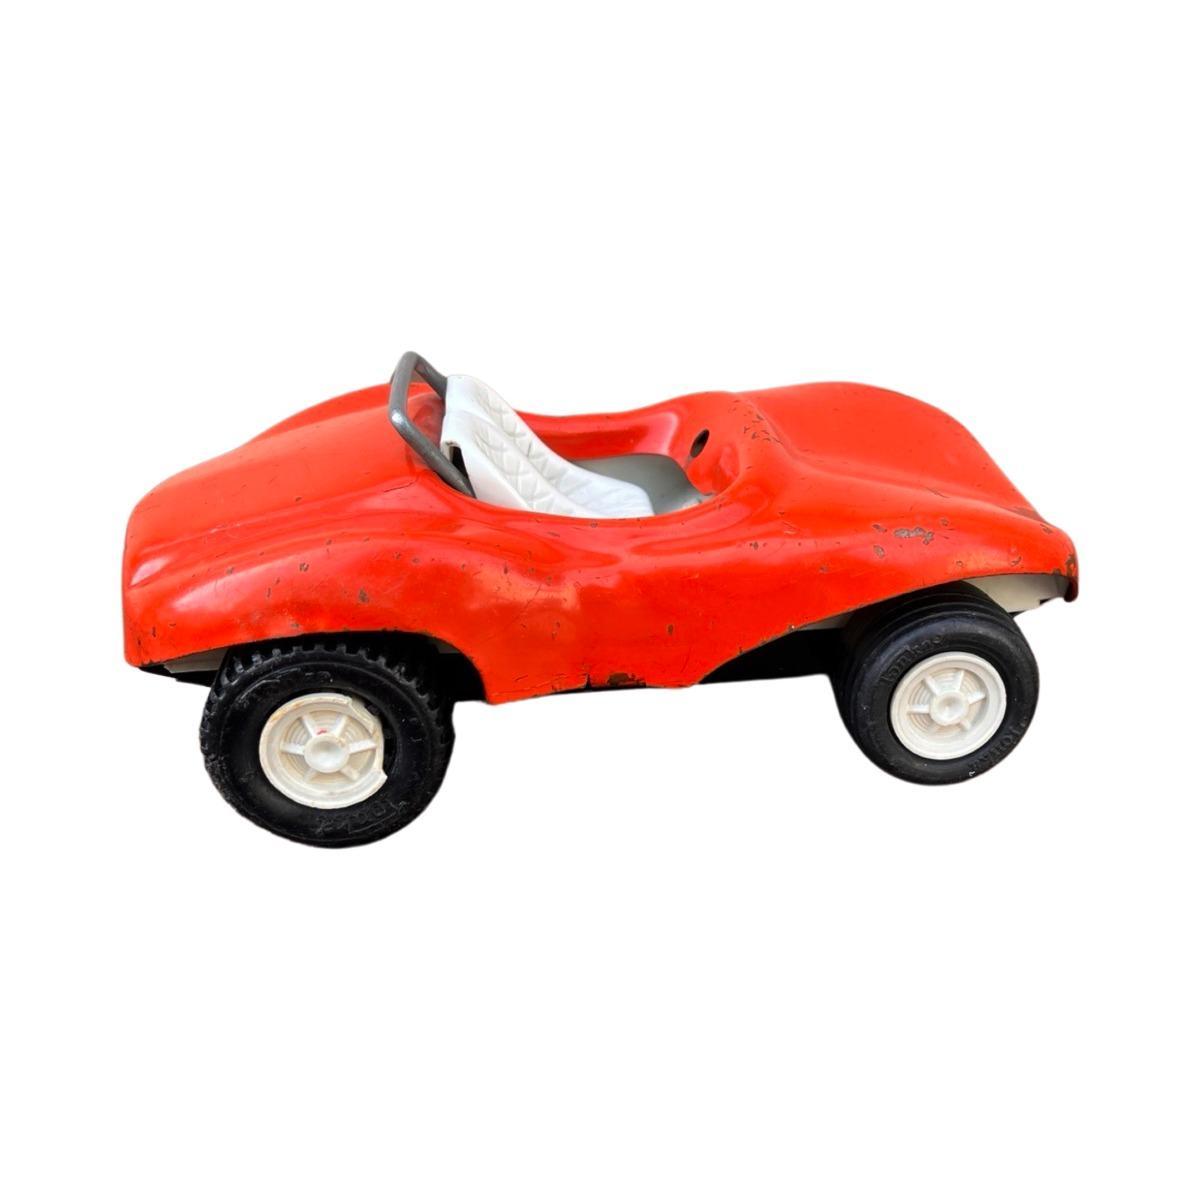 Model samochodu Tonka, Beach Buggy, 1975, czerwony, skala ok. 1:18 8 Full Screen